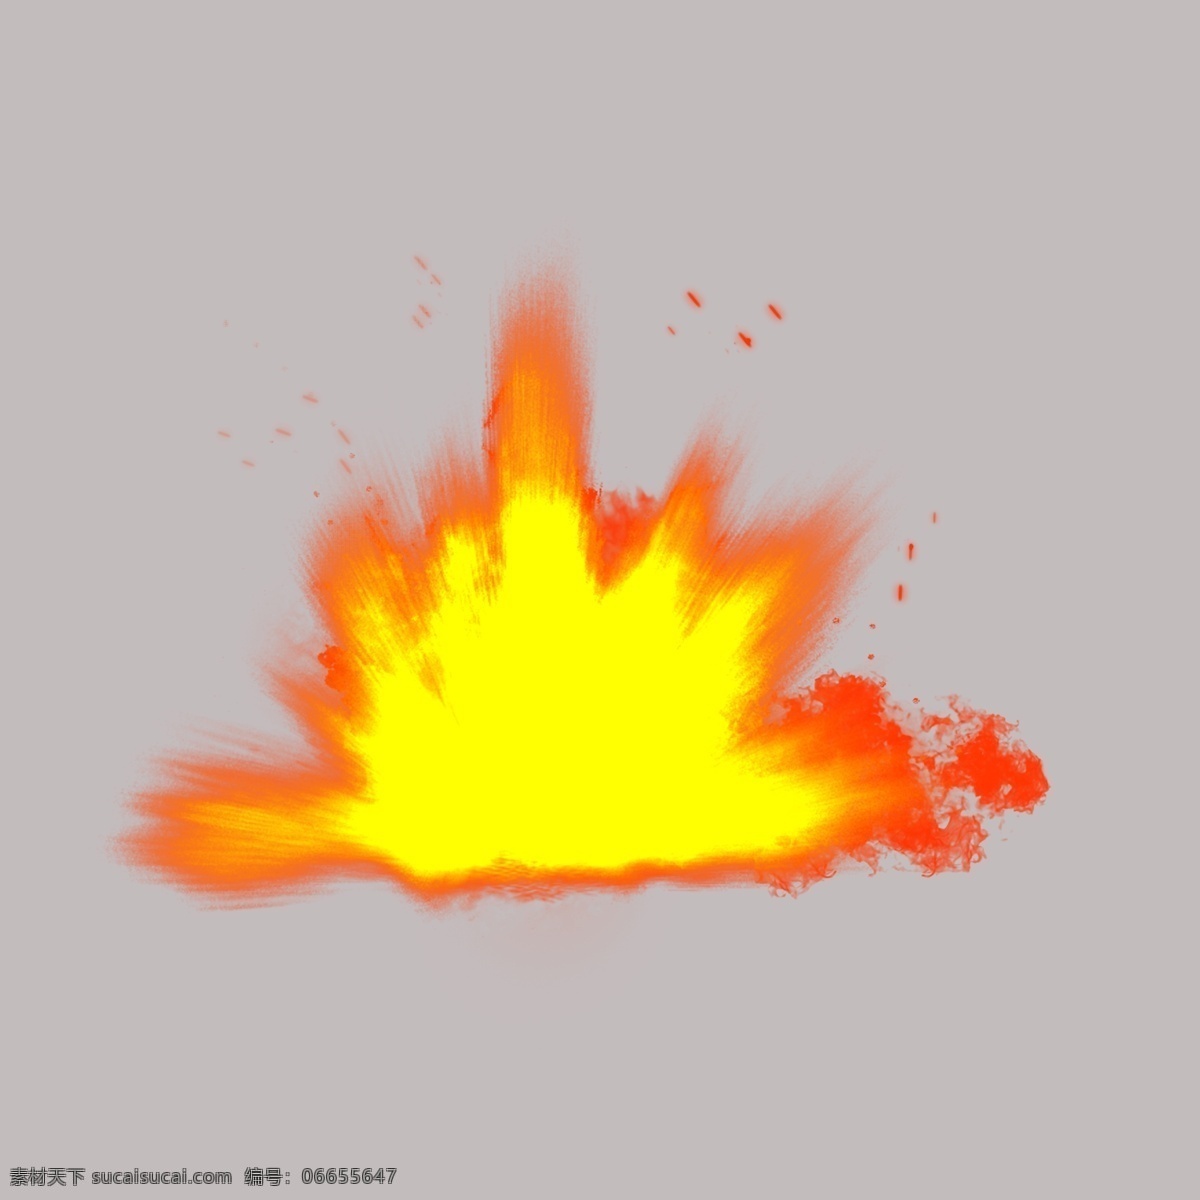 漫画 手绘 火焰 自然 元素 爆炸 火 火星 仿真实火焰 推荐 深色 背景 下 透明 装饰 ps 特效图 火堆 火花 字